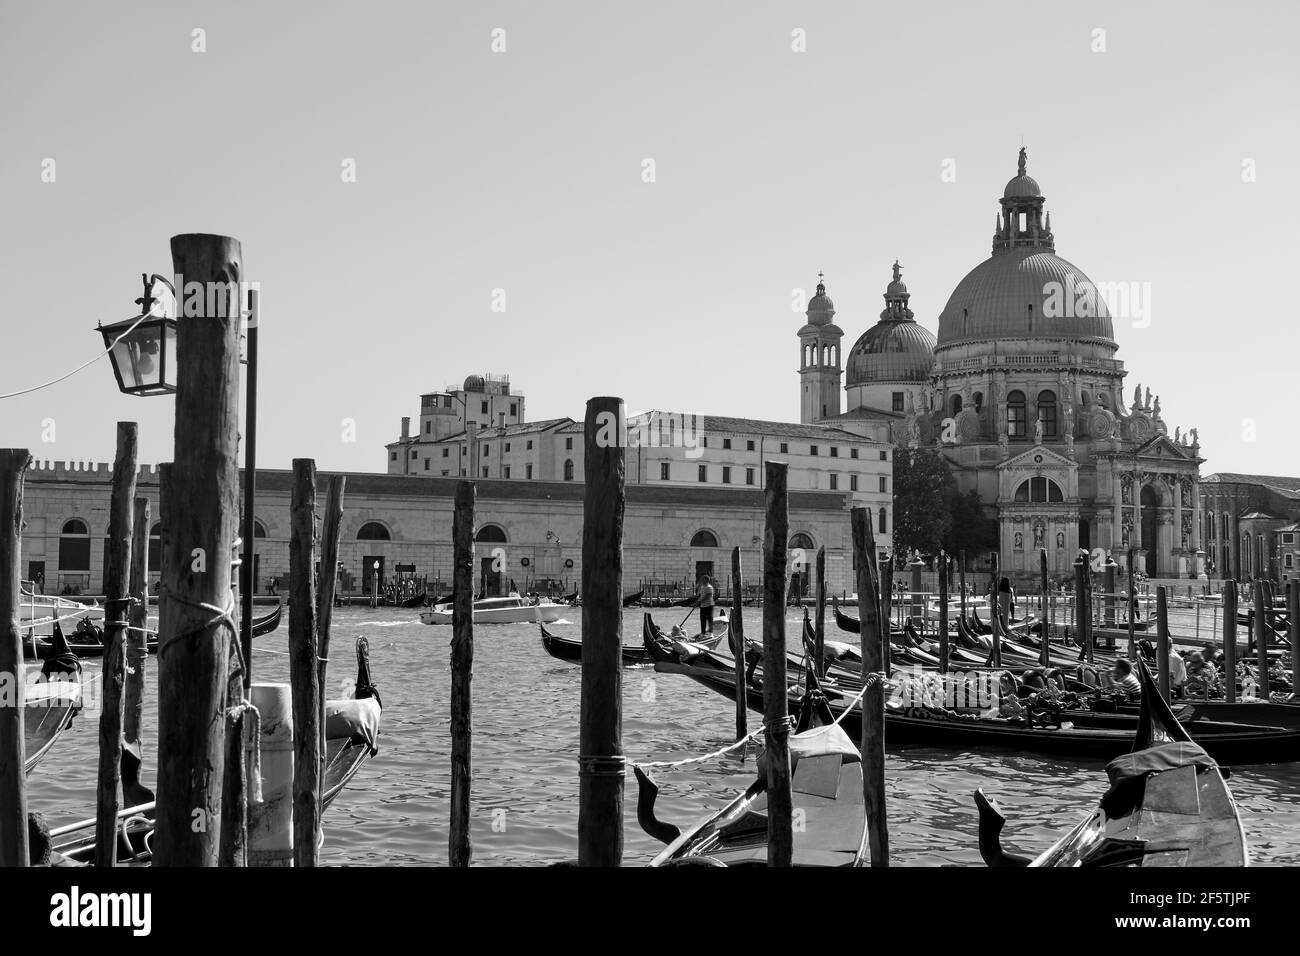 Gondolas and The Santa Maria della Salute church across the Grand Canal in Venice, Italy. Black and white venetian cityscape Stock Photo